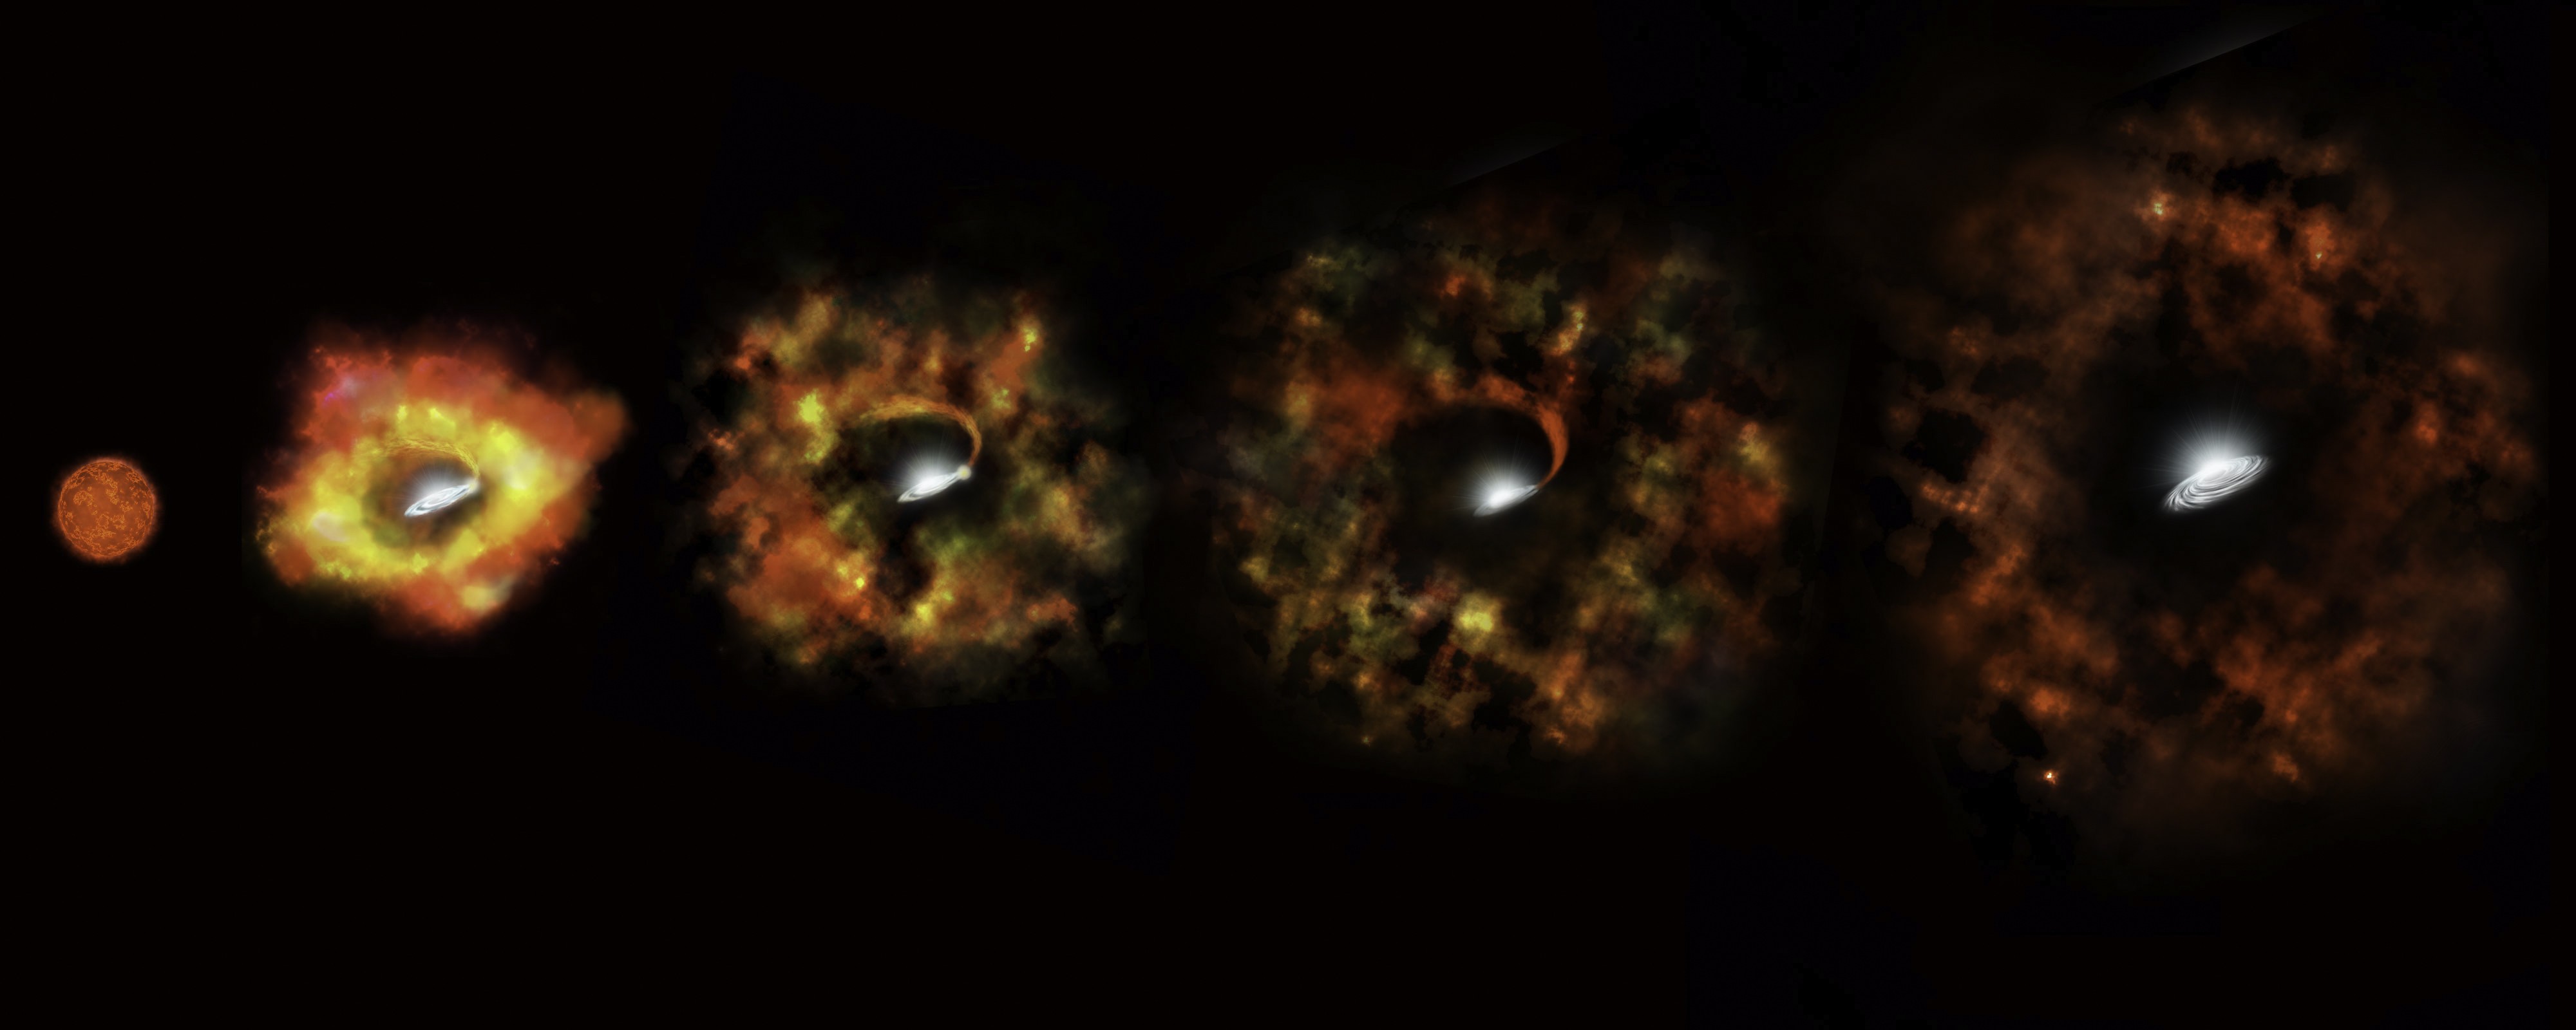 Estrela 25 vezes mais massiva que o Sol deveria explodir em uma supernova, mas falhou — e virou um buraco negro (Foto: NASA, ESA, and P. Jeffries (STScI))